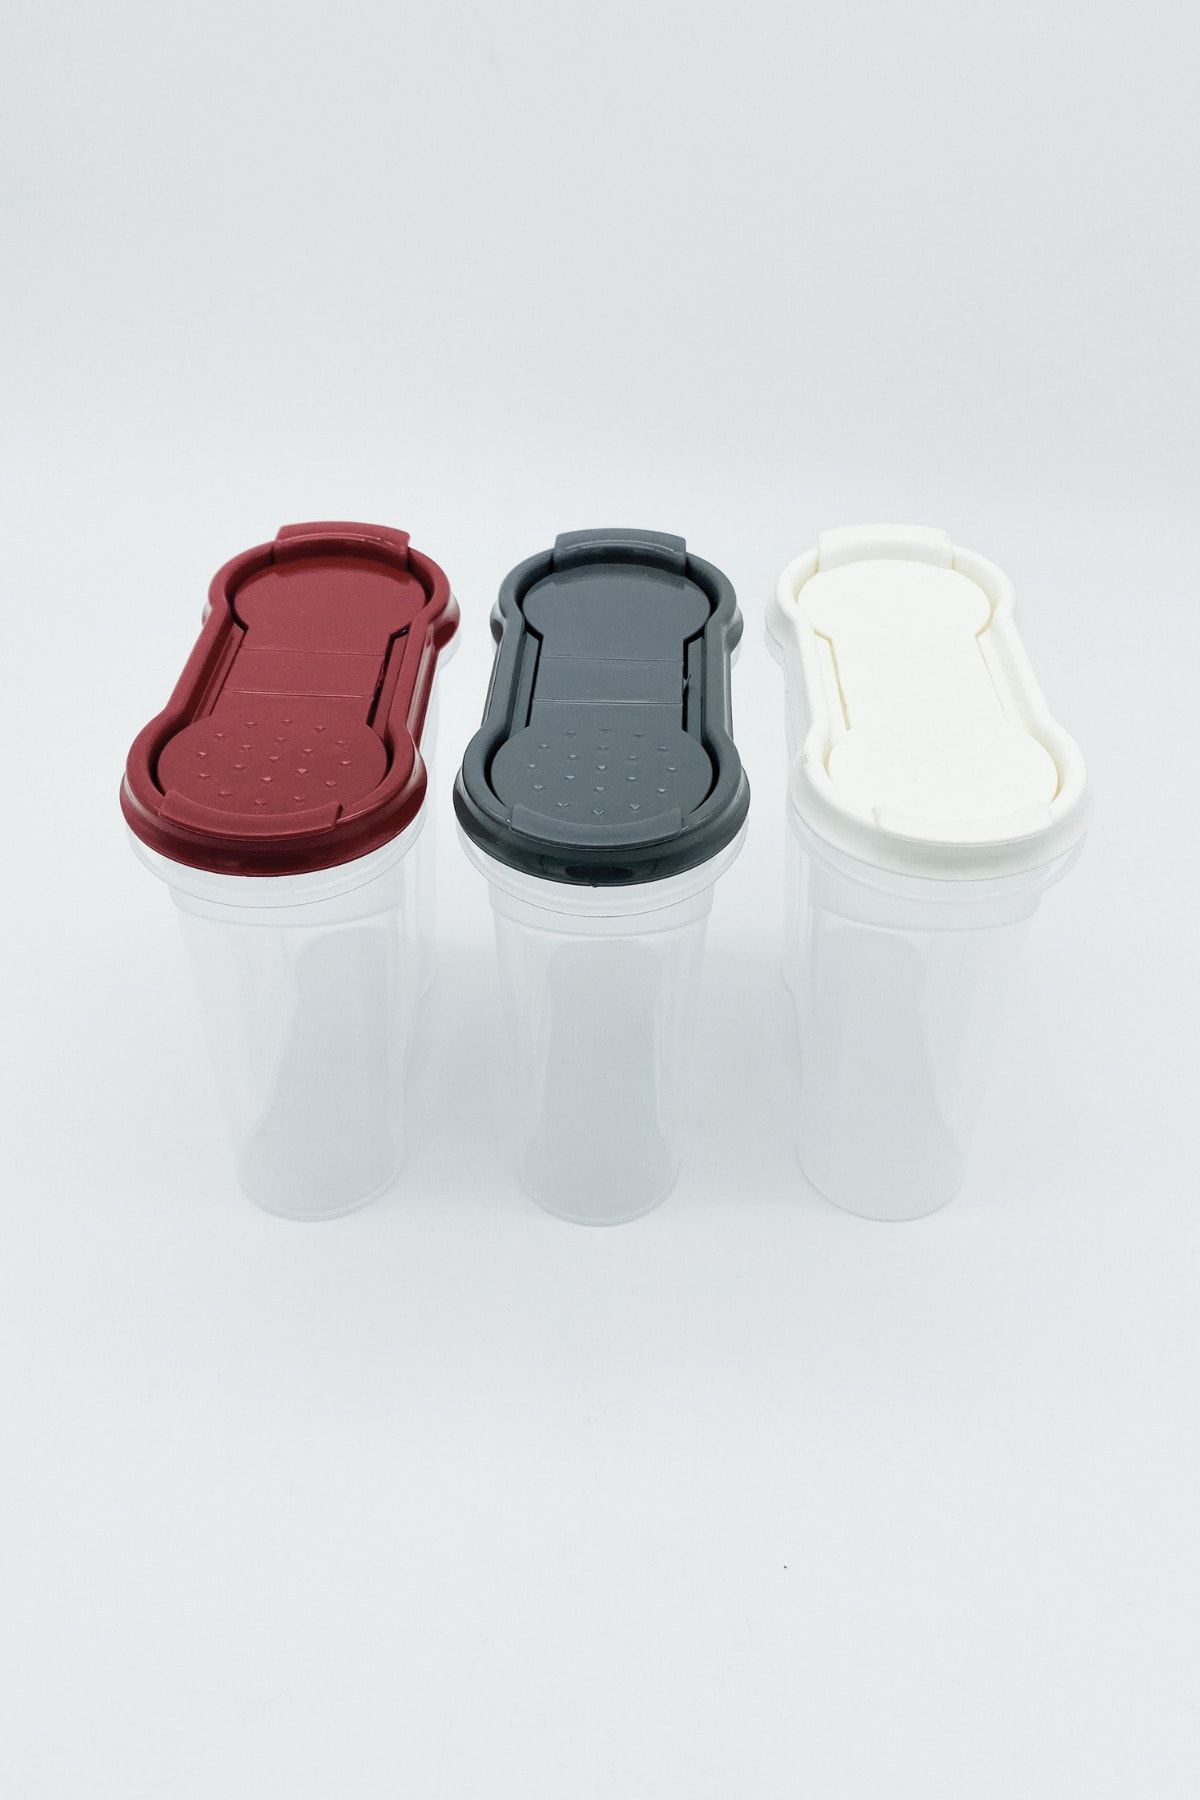 Kitchen Design Lab Şeffaf Mini Baharatlık Siyah, Kırmızı, Beyaz Plastik Baharatlık Tuzluk 3 Adet